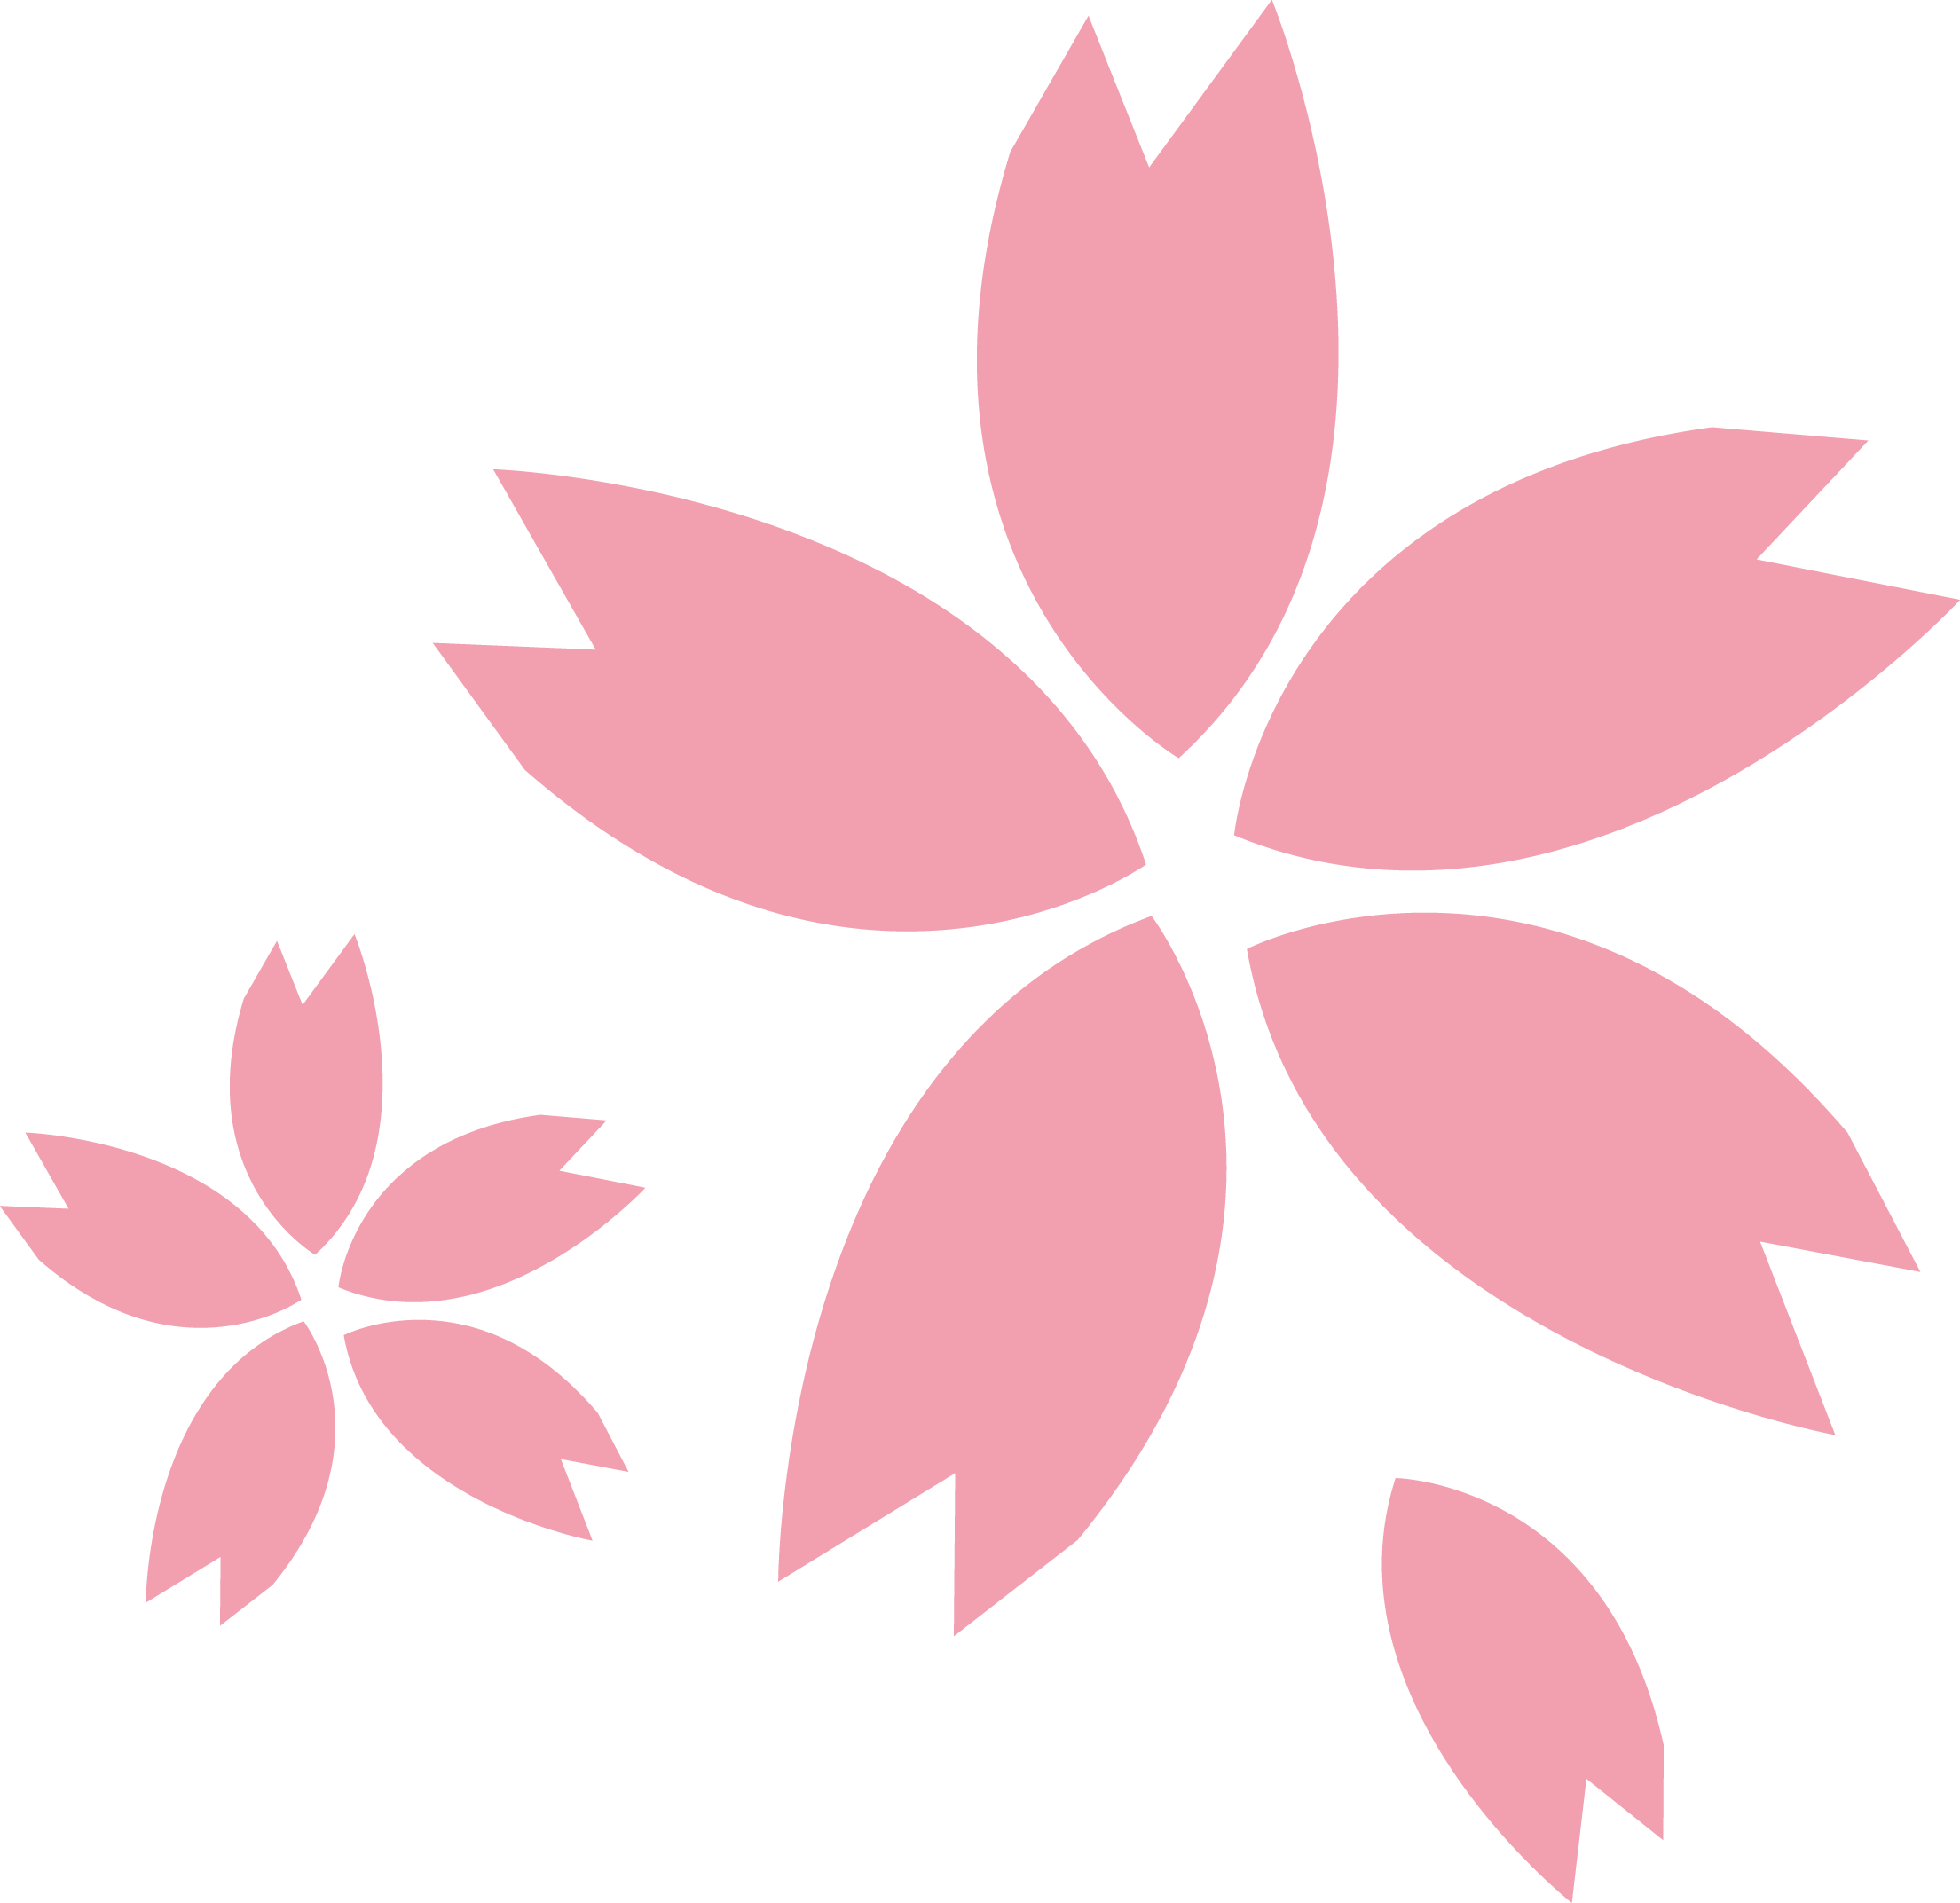 Sakura Flower Clipart Best - Floral Design (2209x2145)